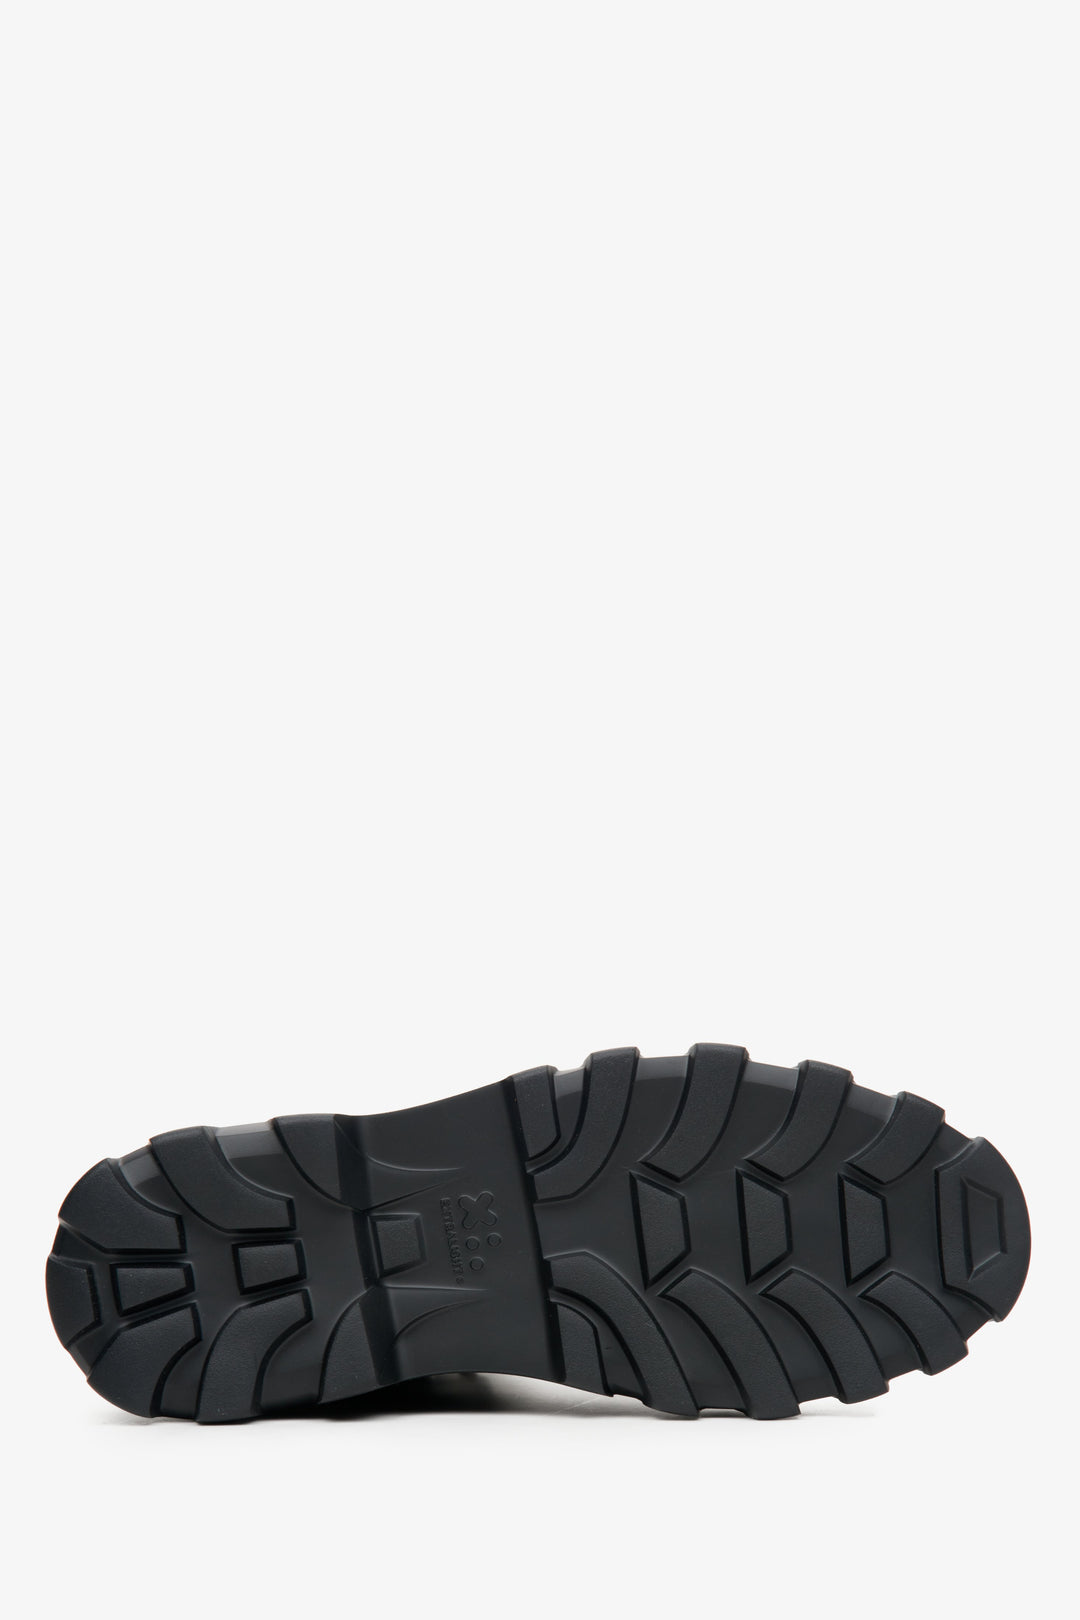 Men's black Estro autumn boots - close-up on the sole.